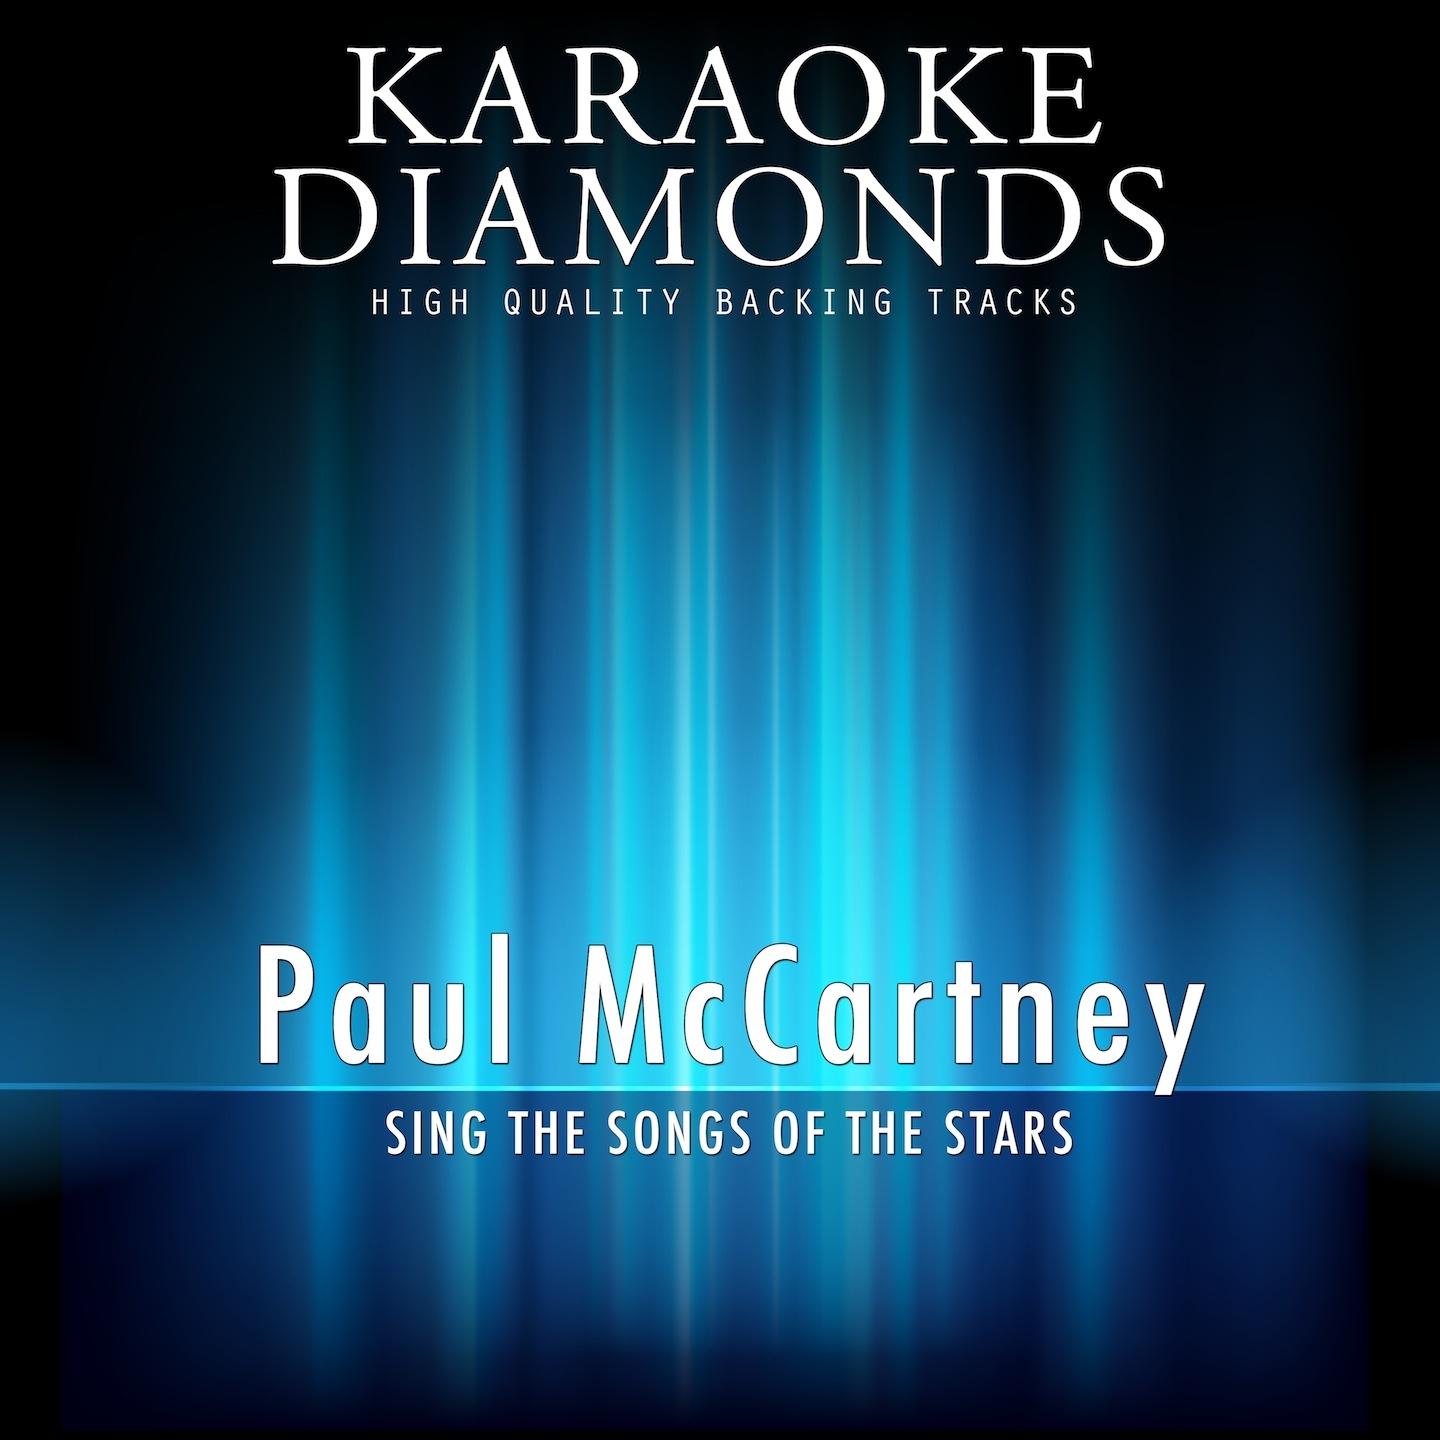 Jet (Karaoke Version In the Style of Paul McCartney, part 1)